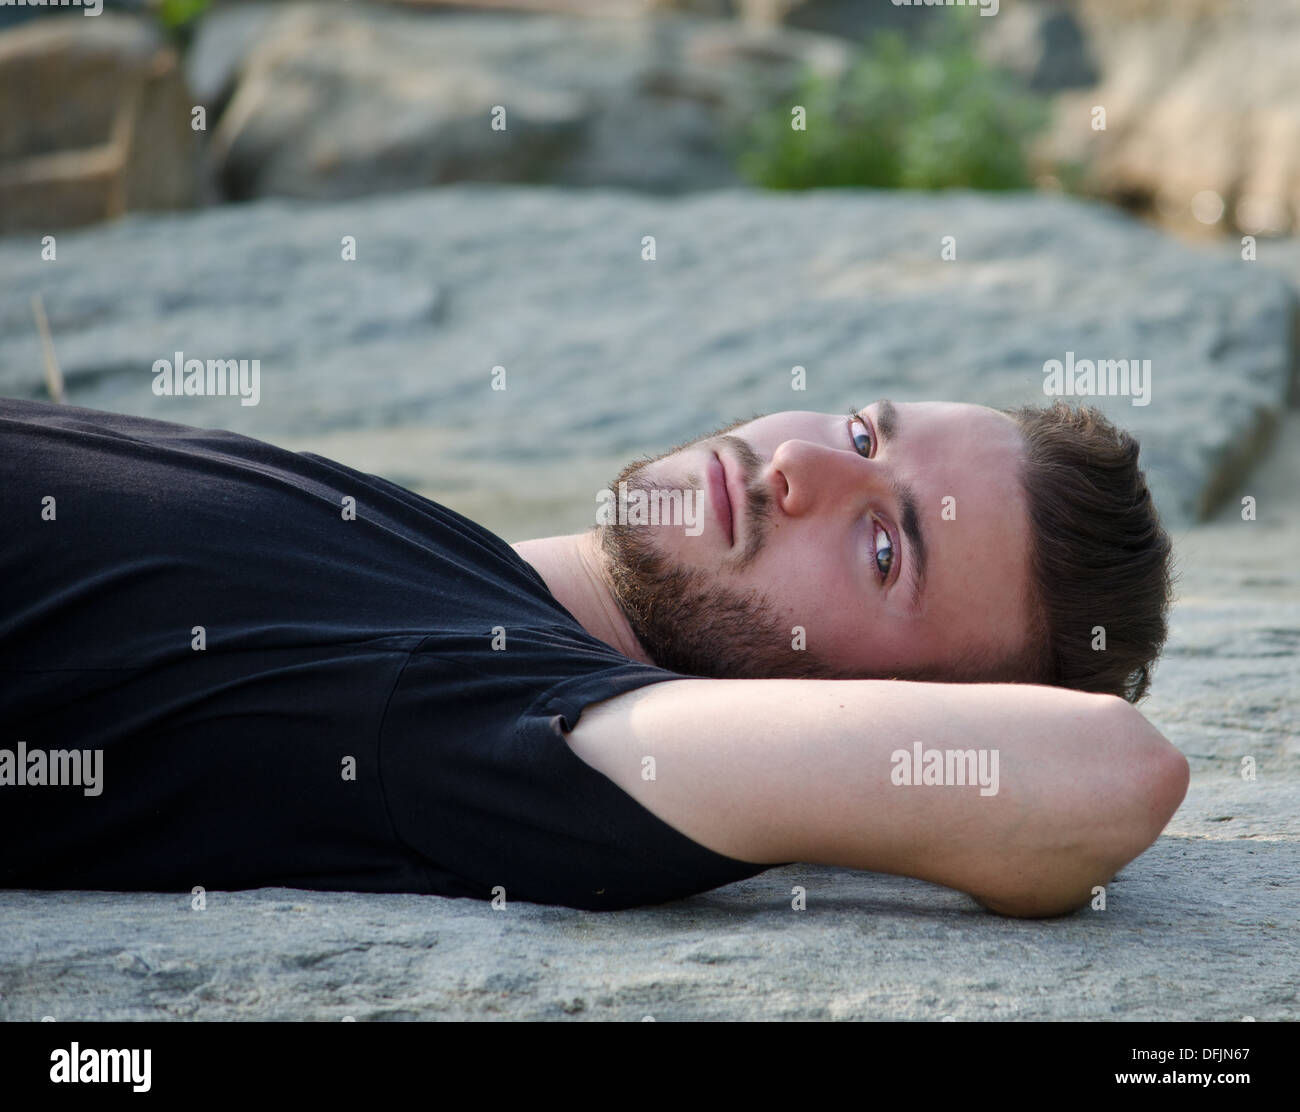 Bel giovane uomo disteso sulla schiena su una roccia, cercando nella fotocamera, all'aperto Foto Stock